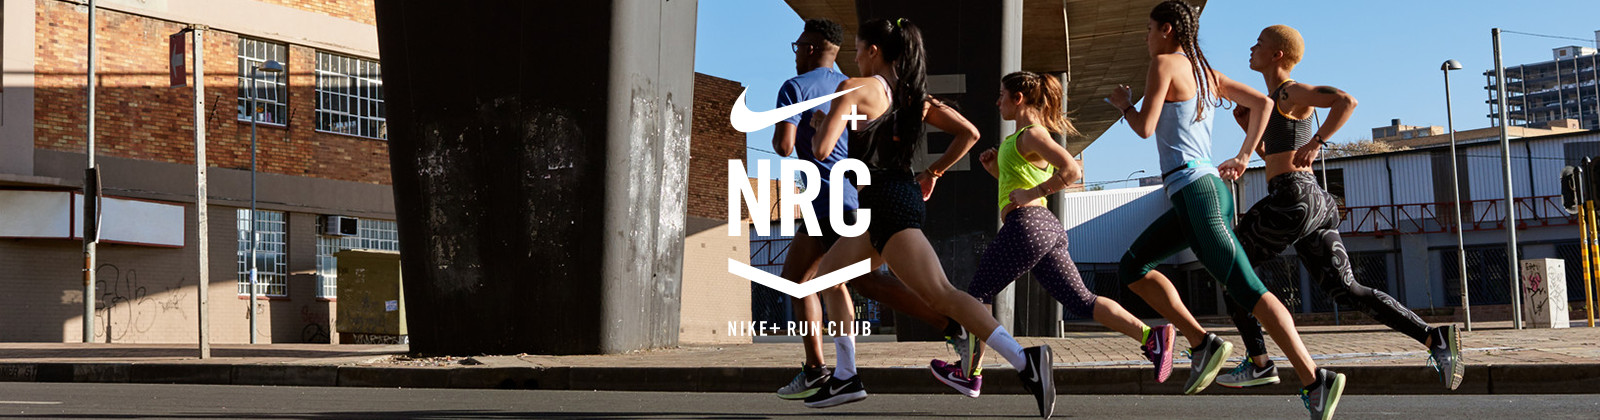 NIKE+ RUN CLUB JOBURG | Nike